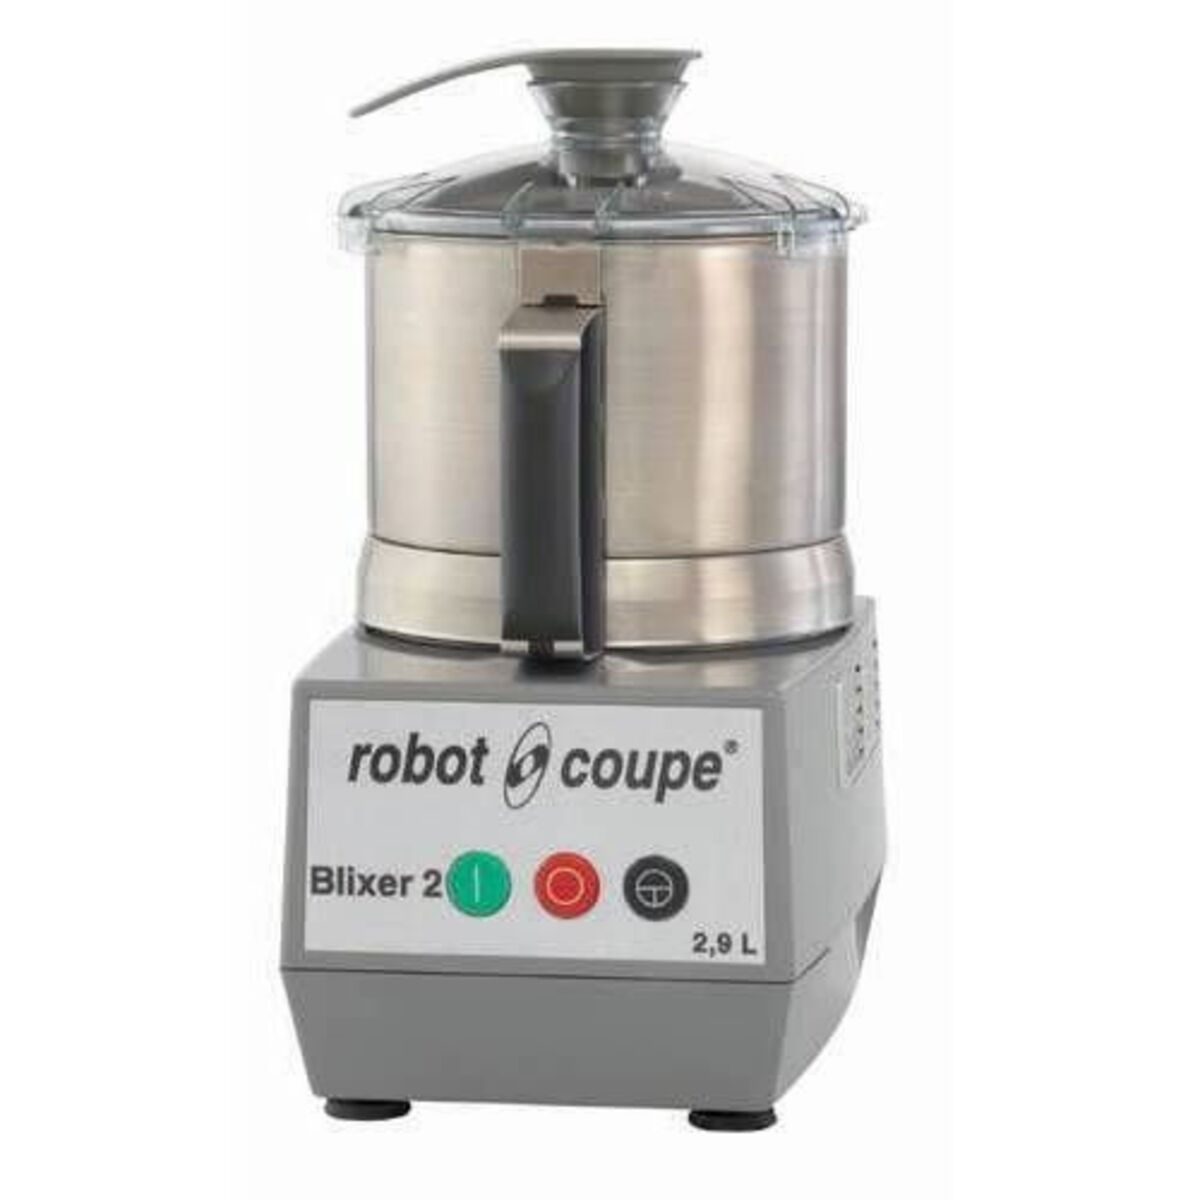 Blixer 2 robot coupe monophasé 230/50/1